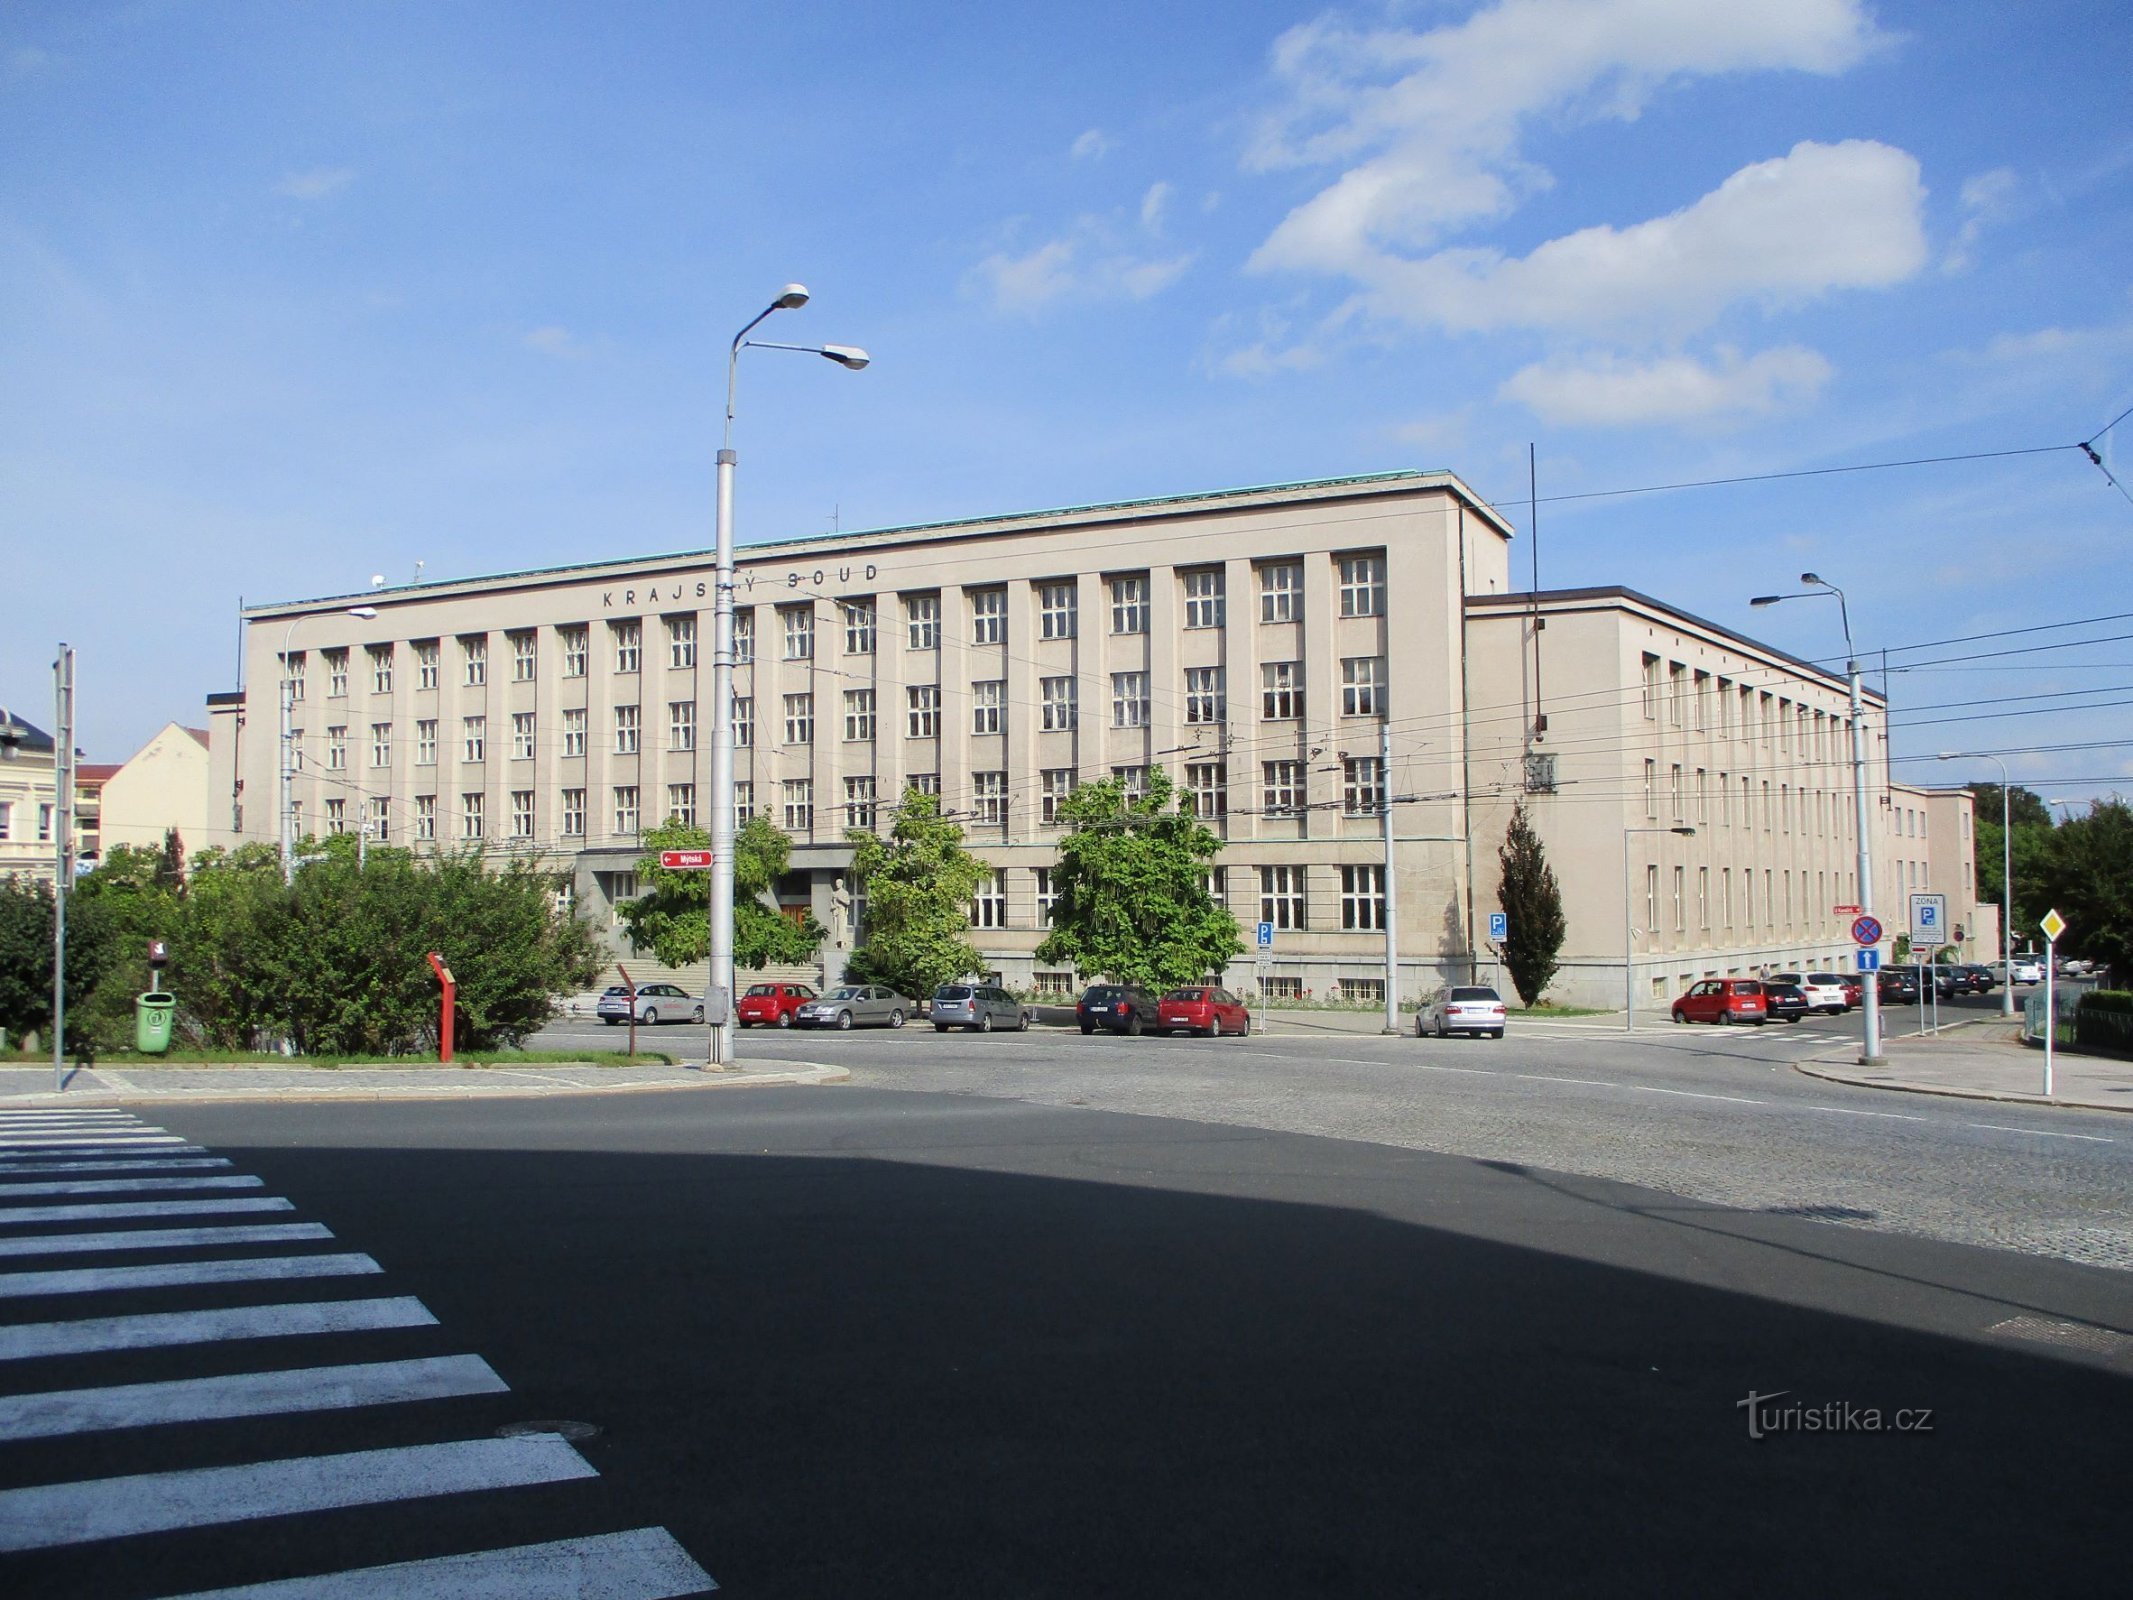 Окружной суд в Градце Кралове (15.9.2019)